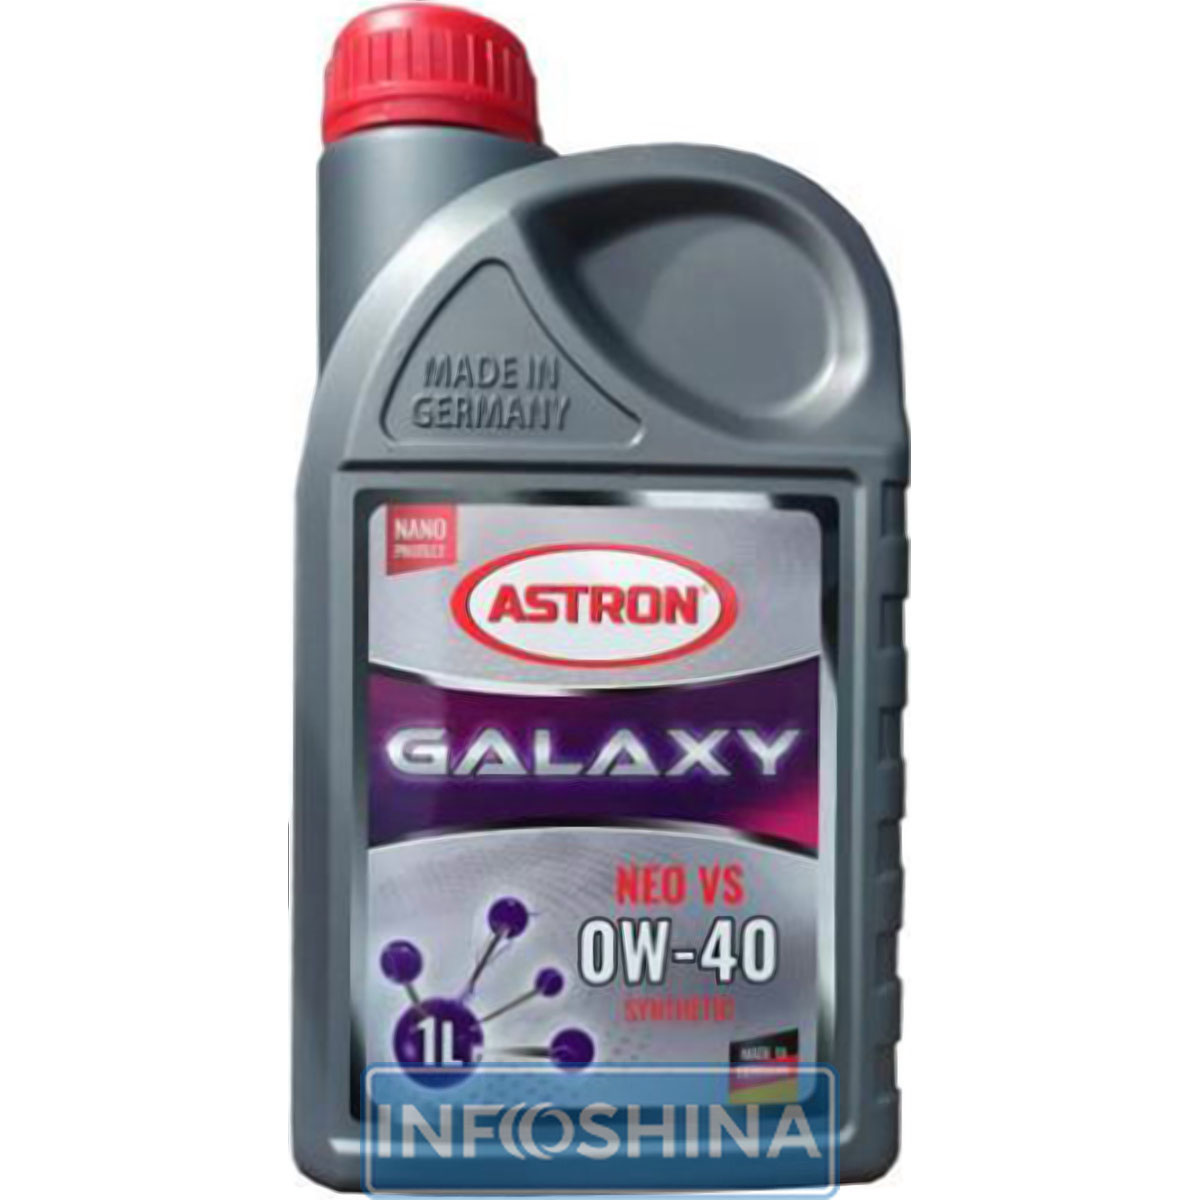 ASTRON Galaxy NEO VS 0W-4